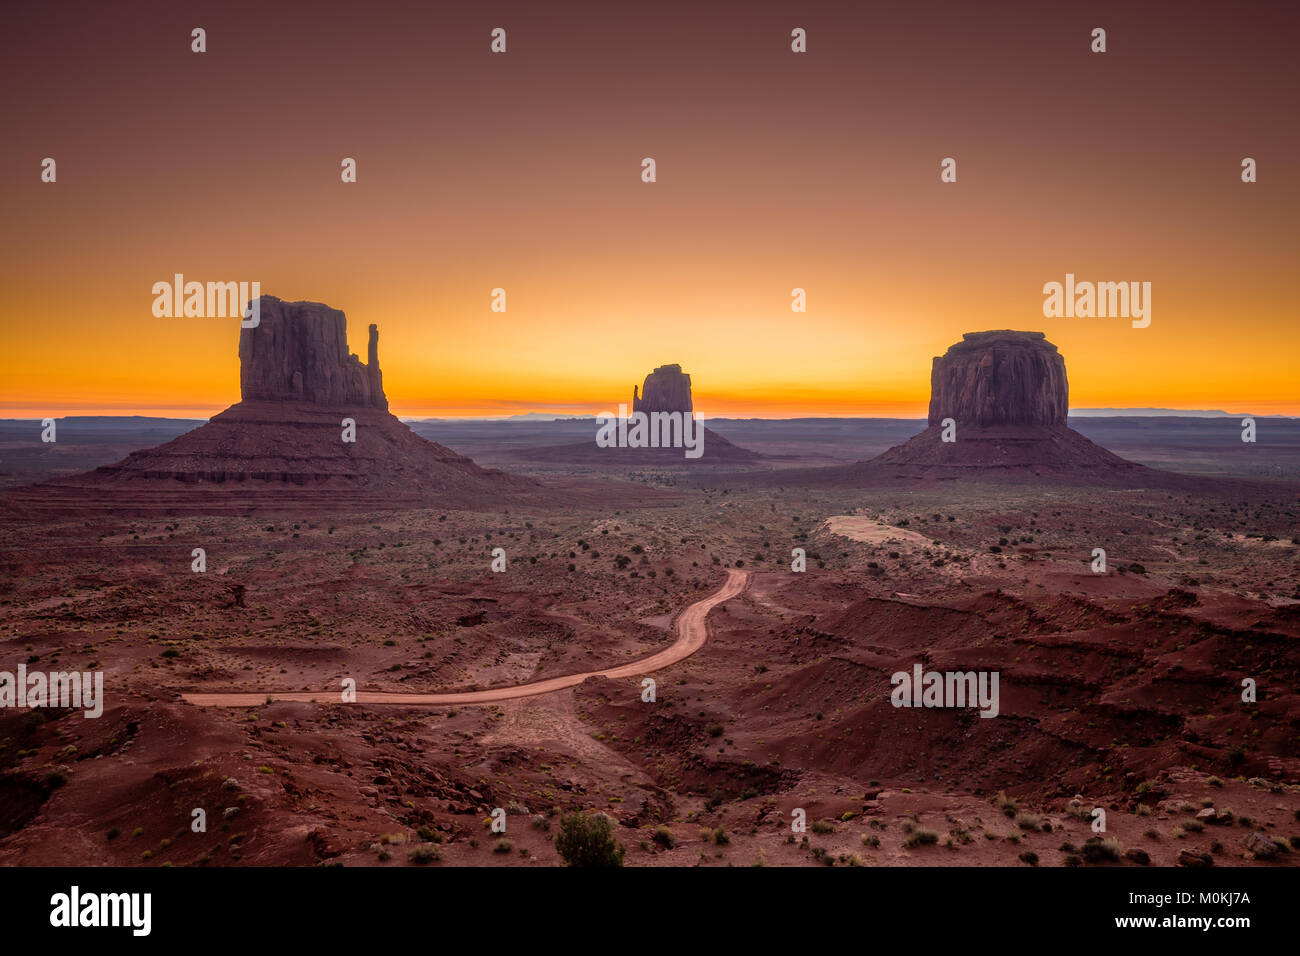 La vue classique du célèbre Monument Valley au lever du soleil, Arizona, USA Banque D'Images